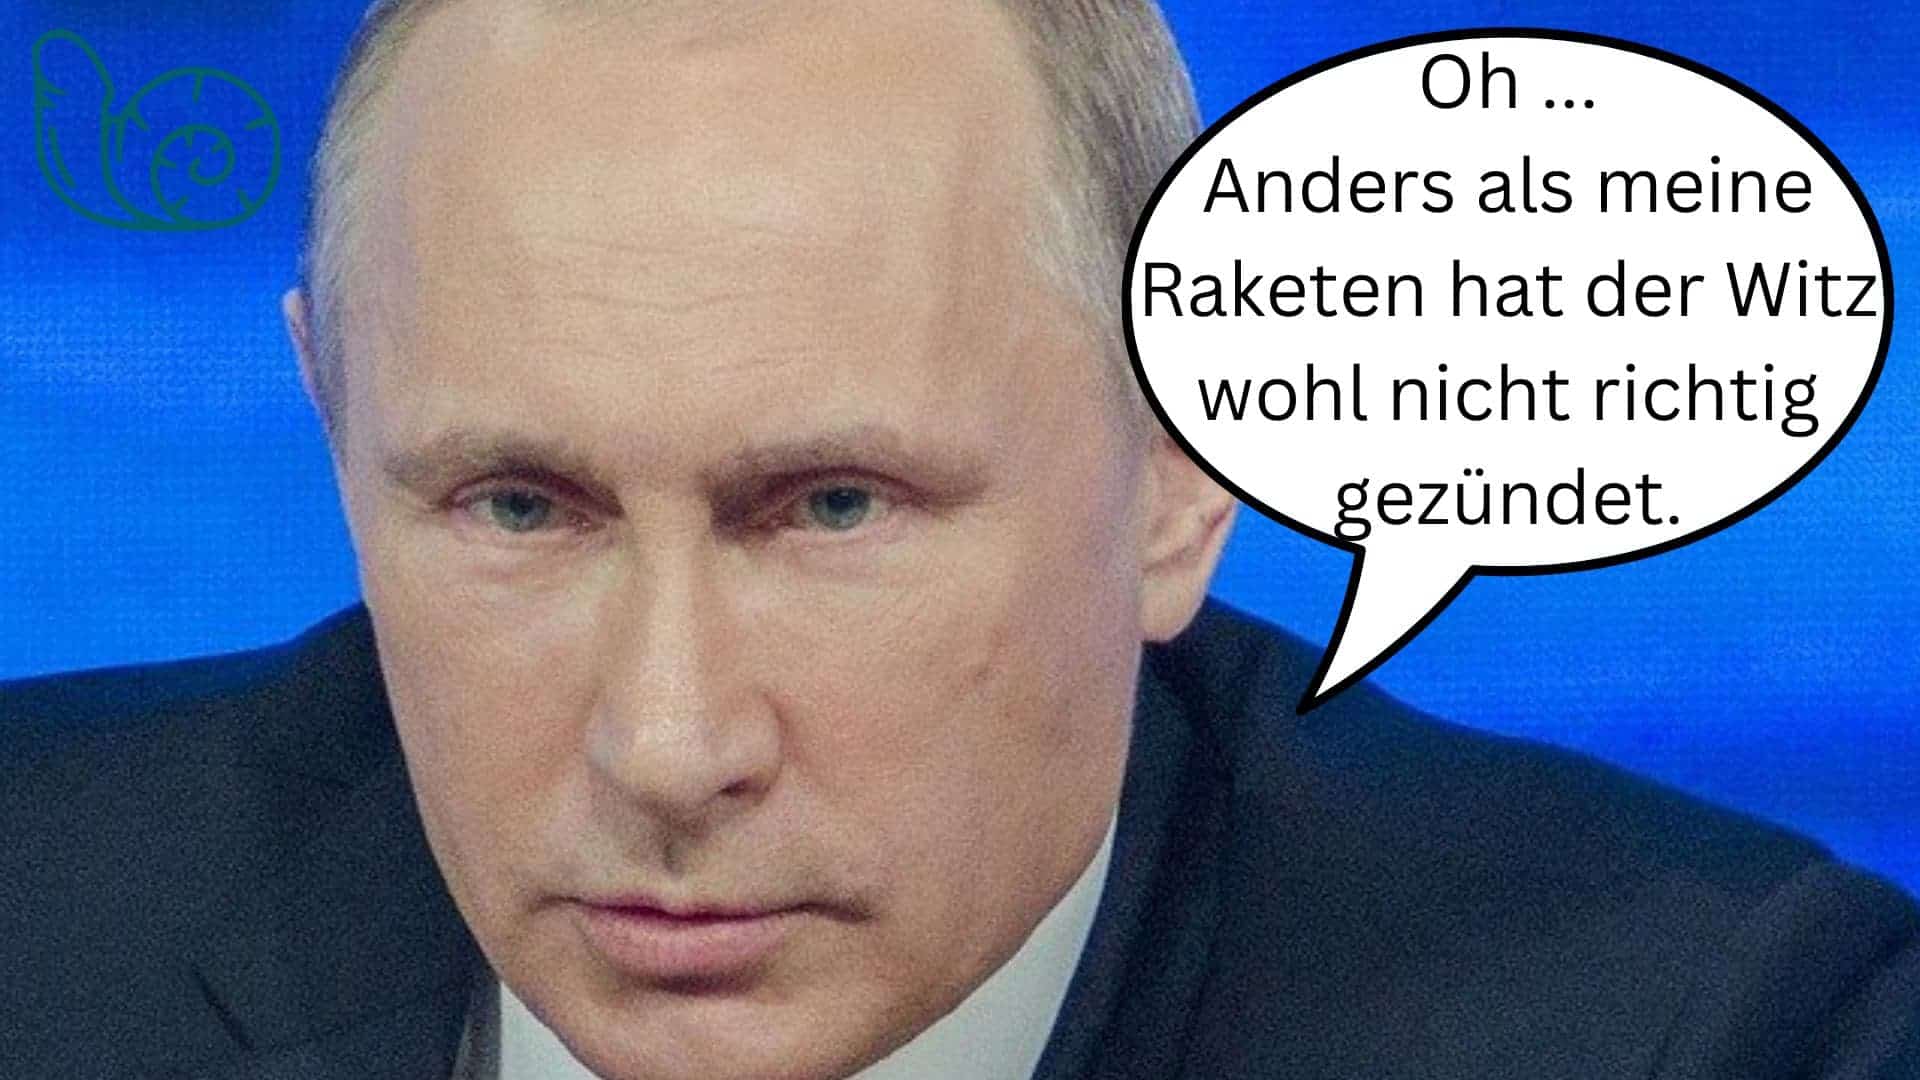 Bild für den Beitrag: Putin: "Nur ein Scherz"